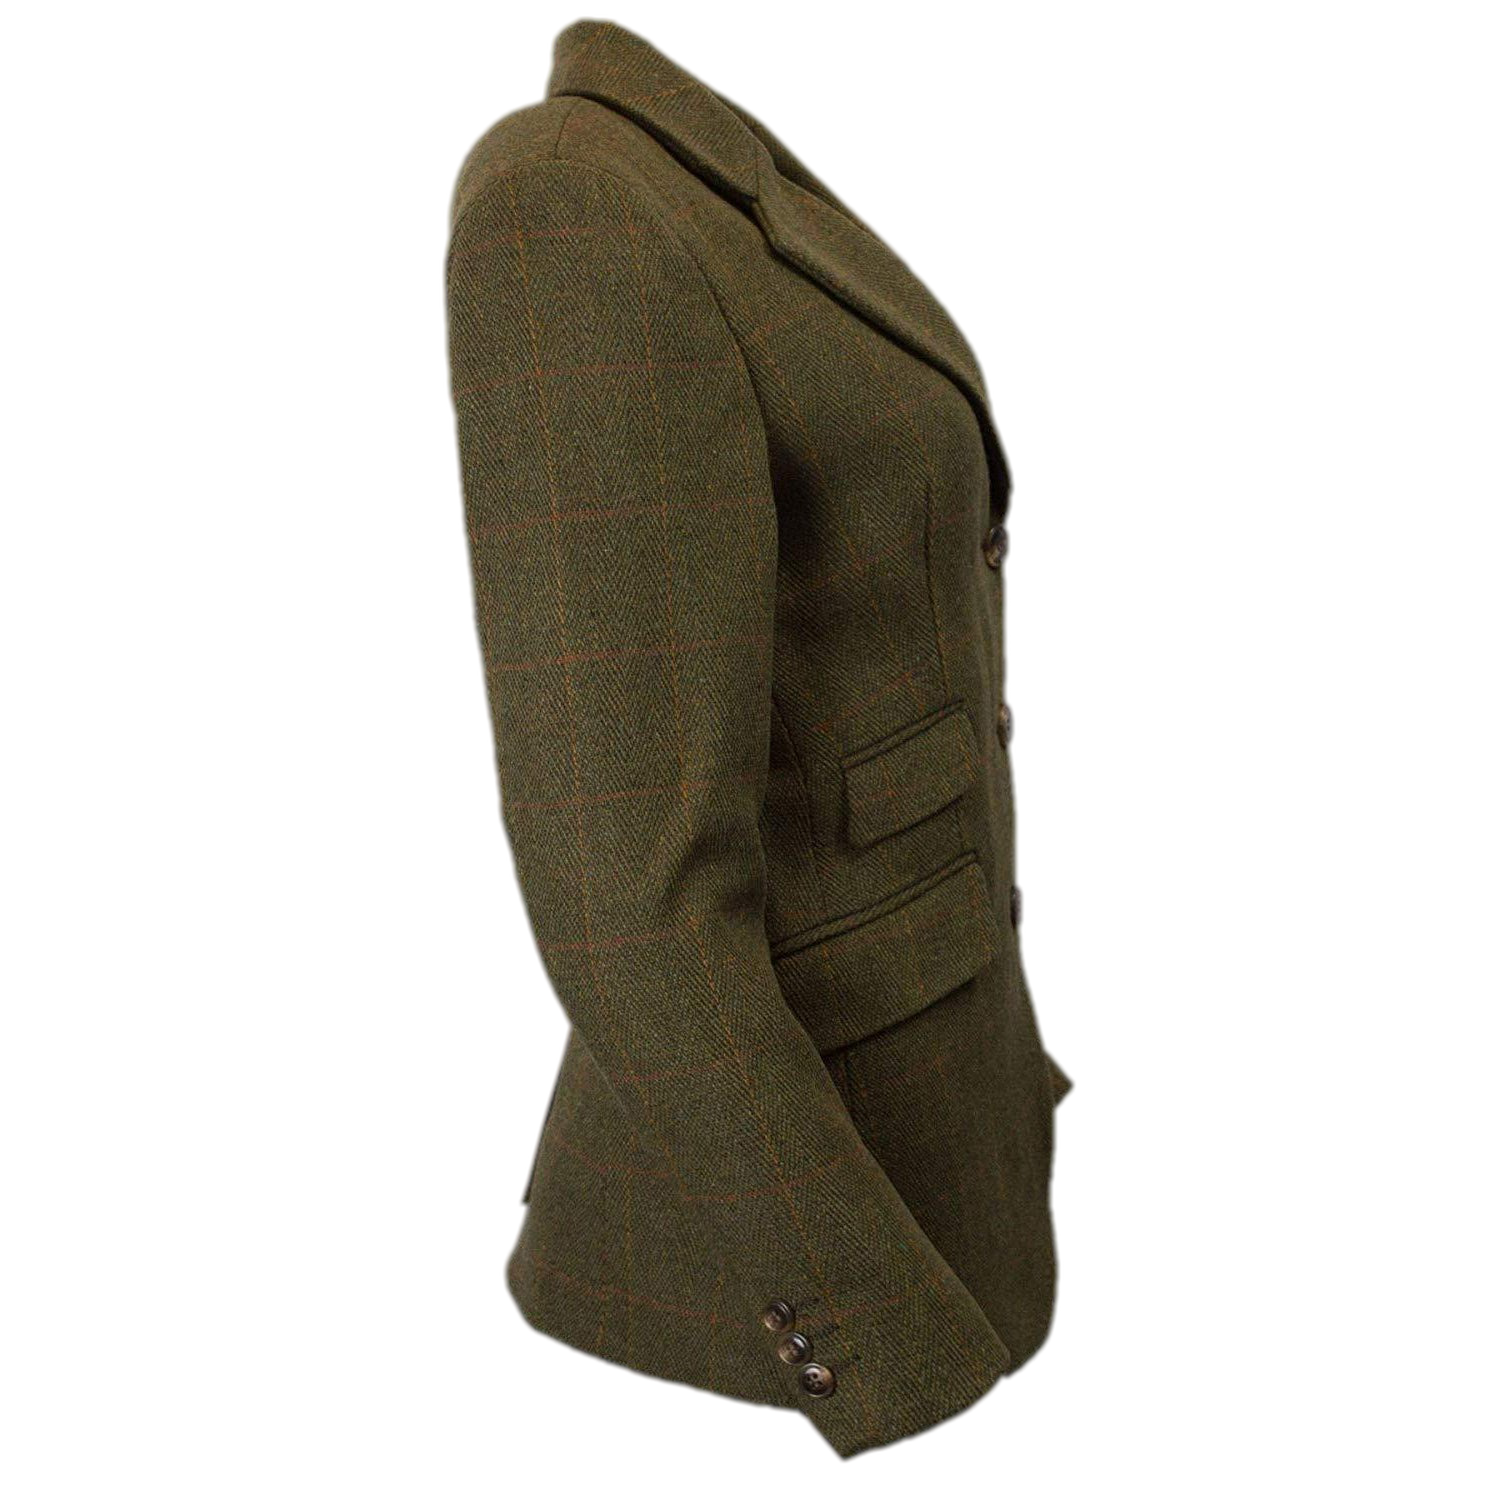 Mayland Tweed Jacket